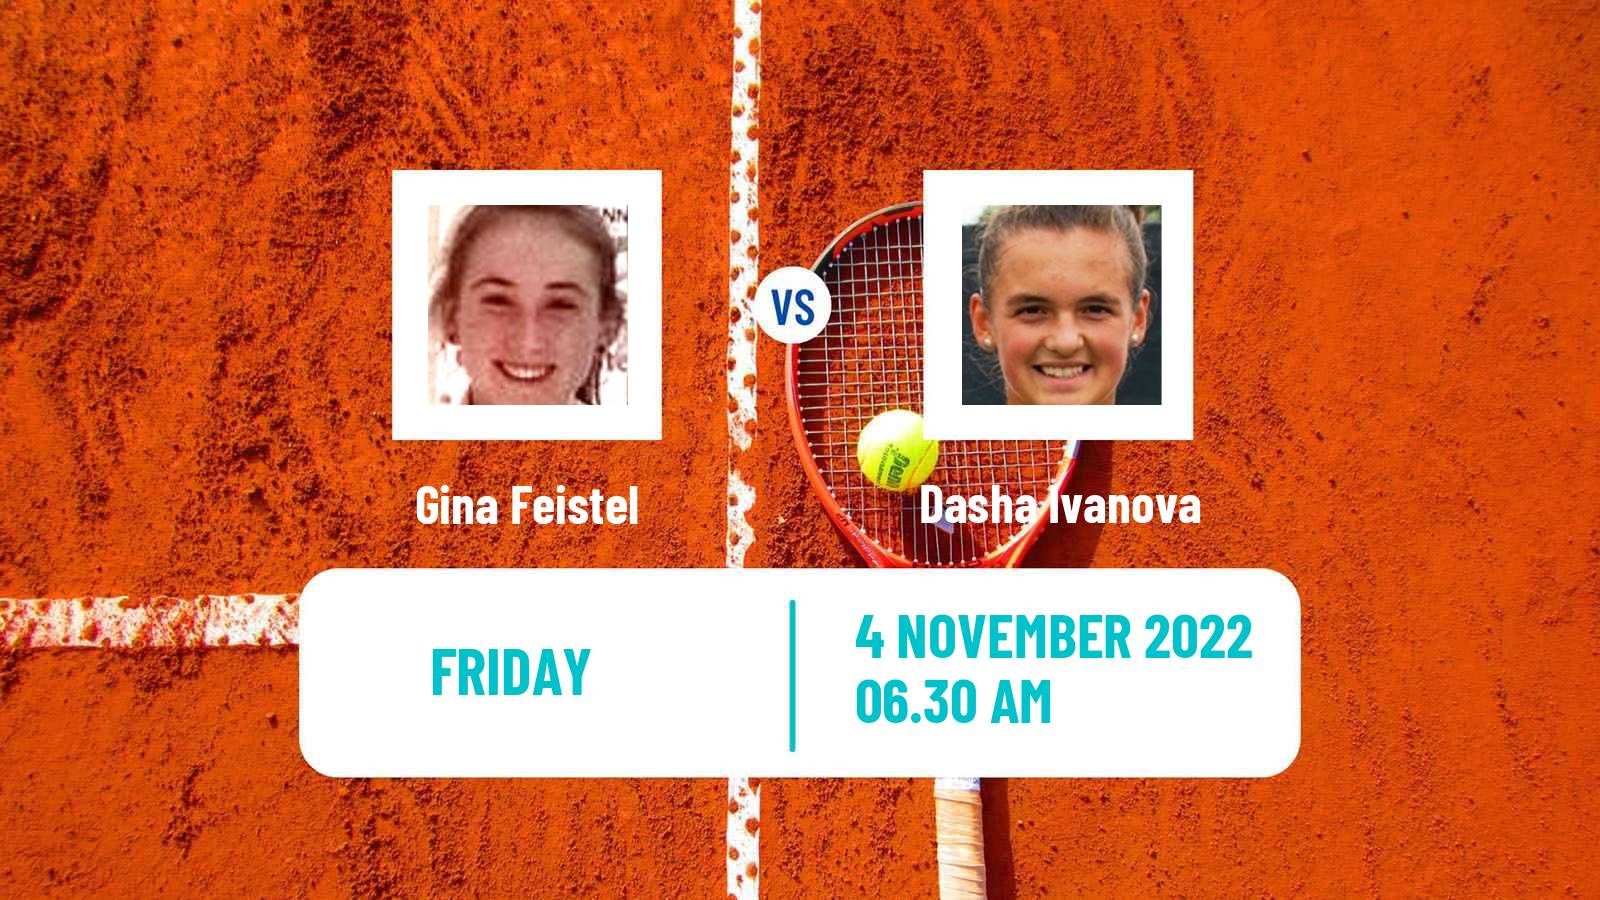 Tennis ITF Tournaments Gina Feistel - Dasha Ivanova